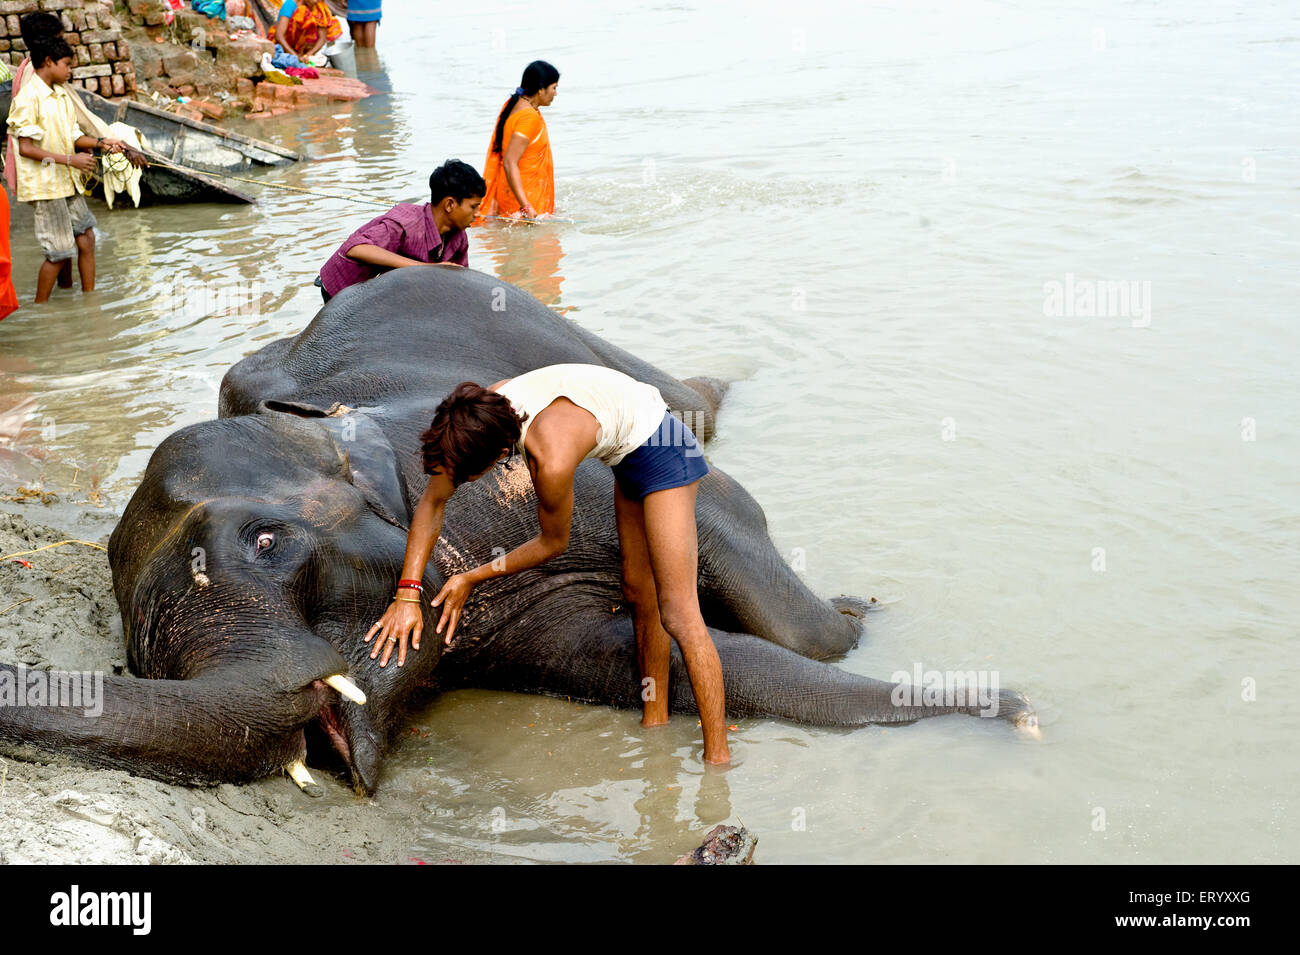 Baignade des éléphants dans la rivière Gandak, Sonepur Cattle Fair, Sonepur Mela, Harihar Kshetra Mela, Sonpur, Saran District, Bihar, Inde, Asie Banque D'Images